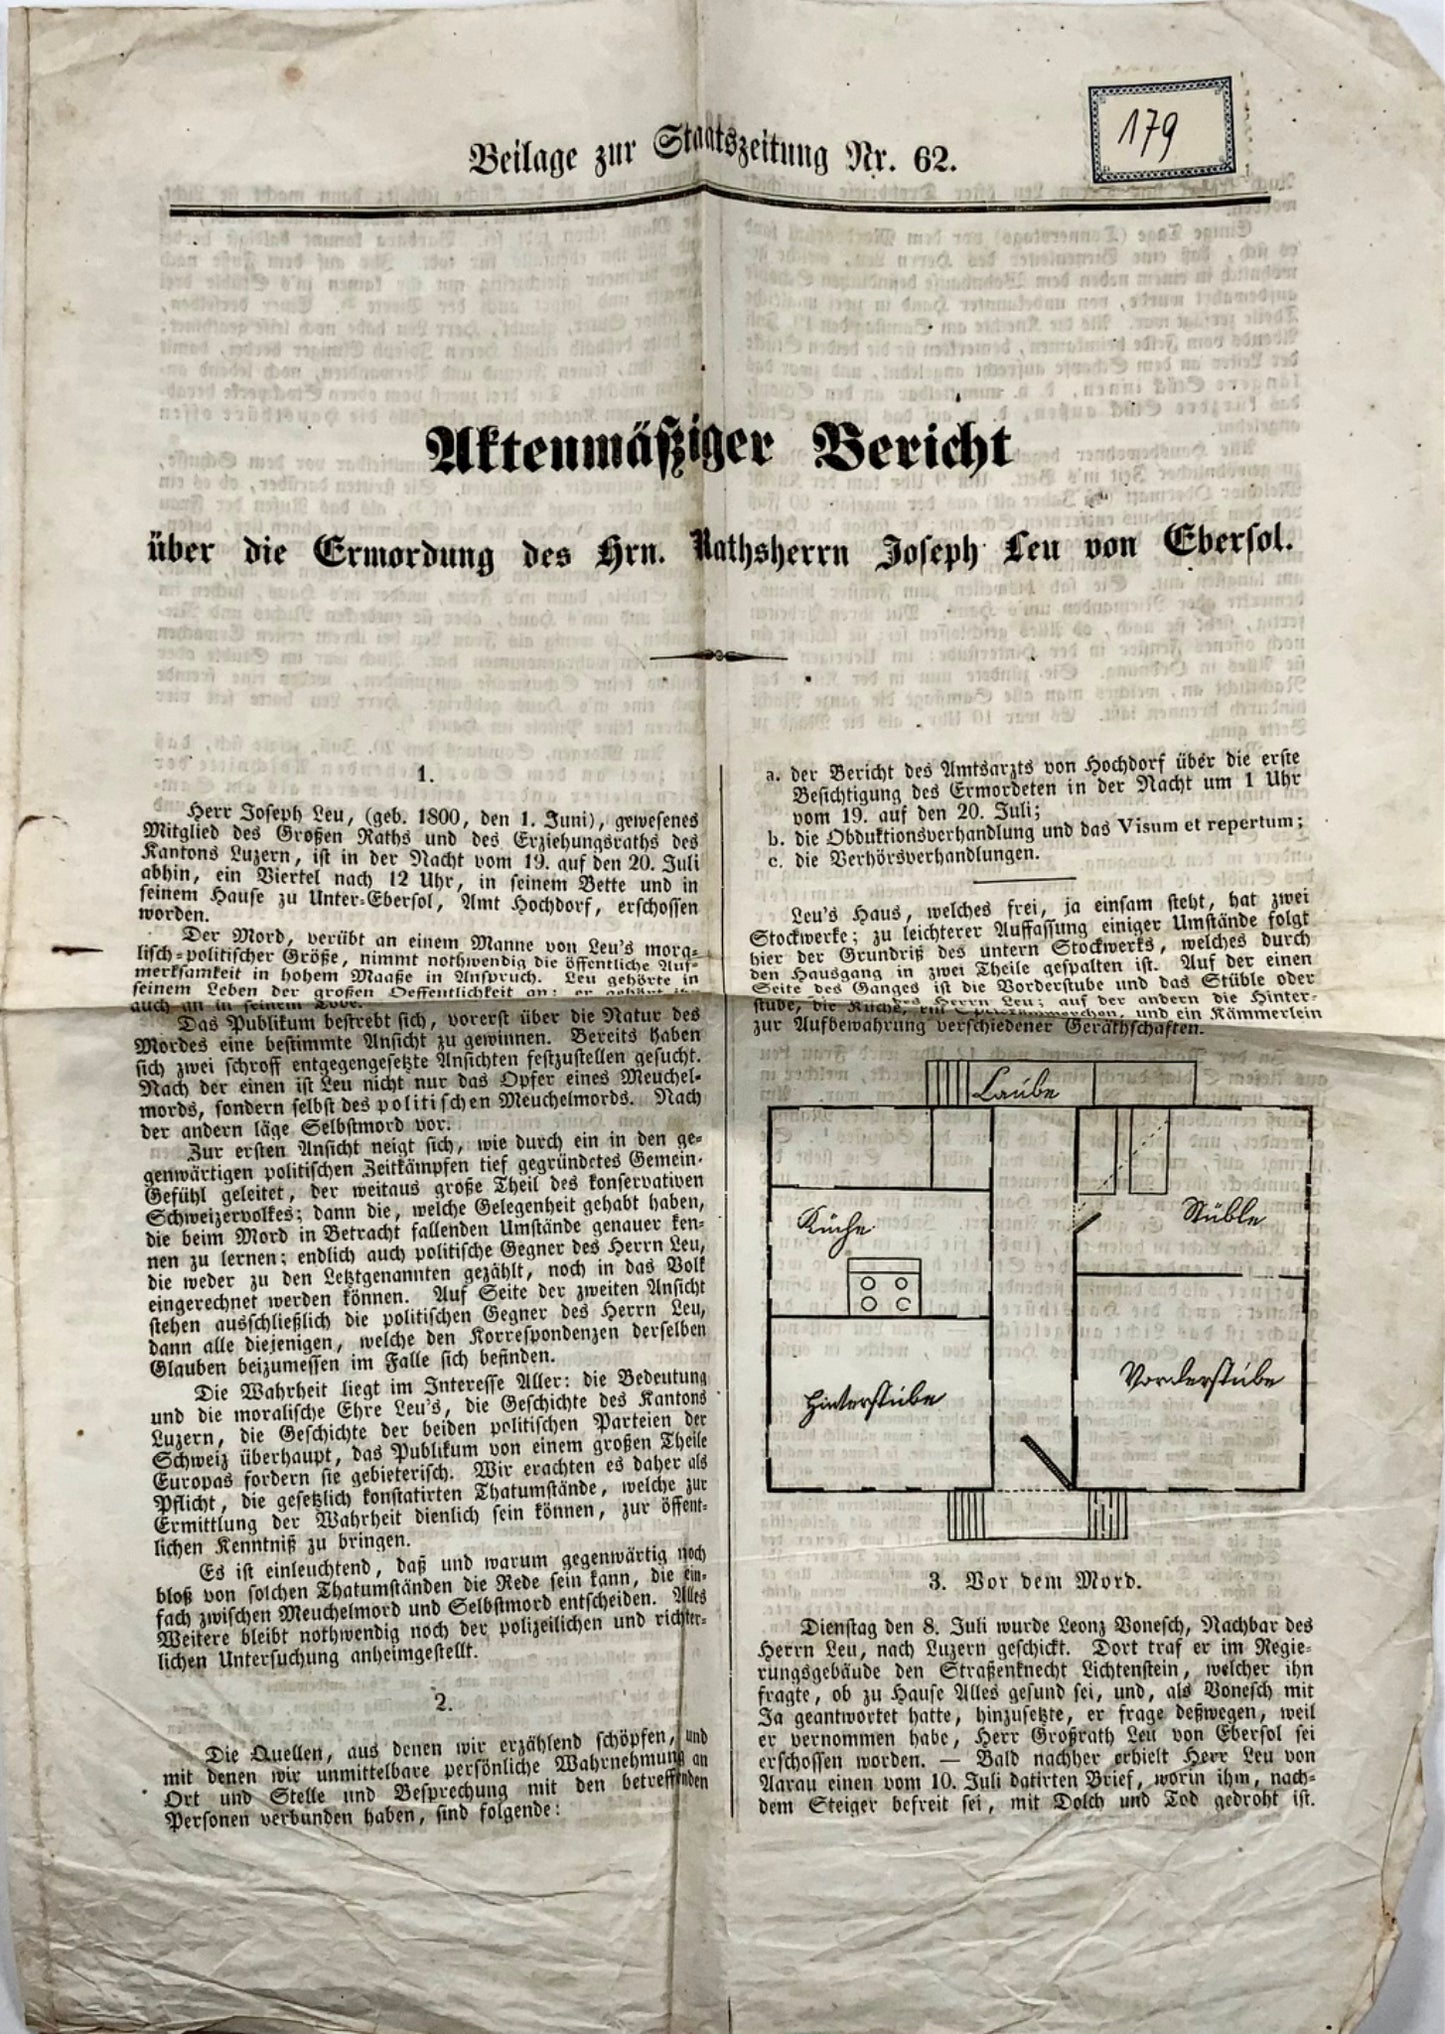 1845 Report on the murder of Joseph Leu von Ebersol, founder of CVP, Switzerland